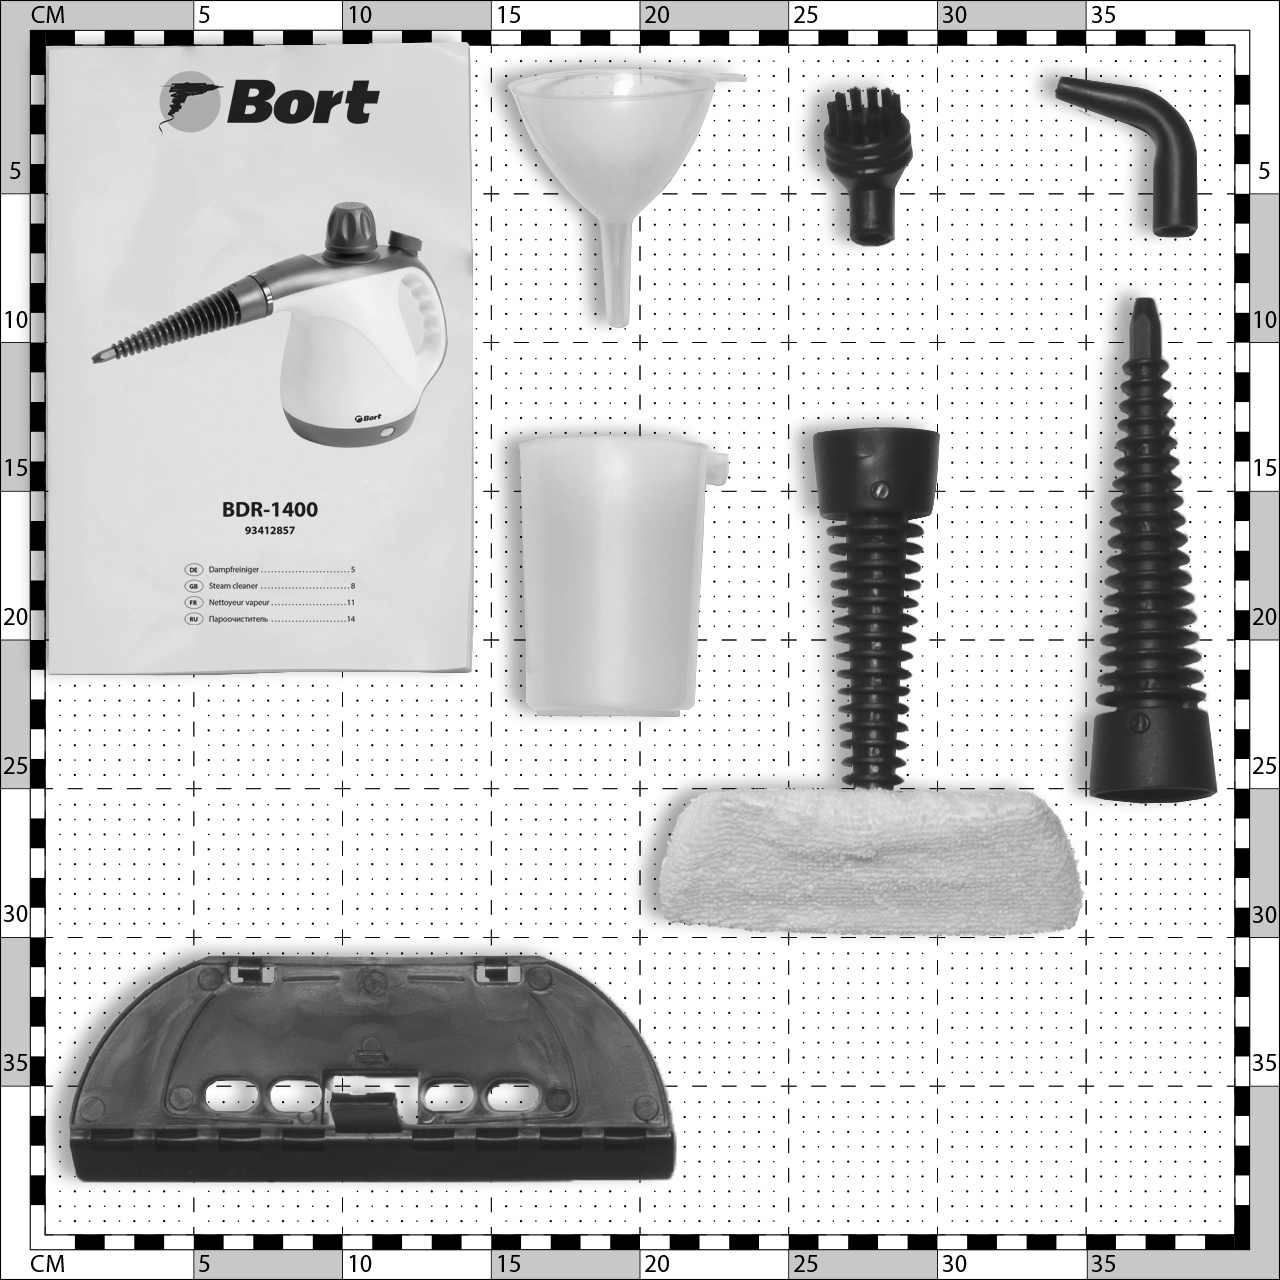 Steam cleaner BORT BDR-1400